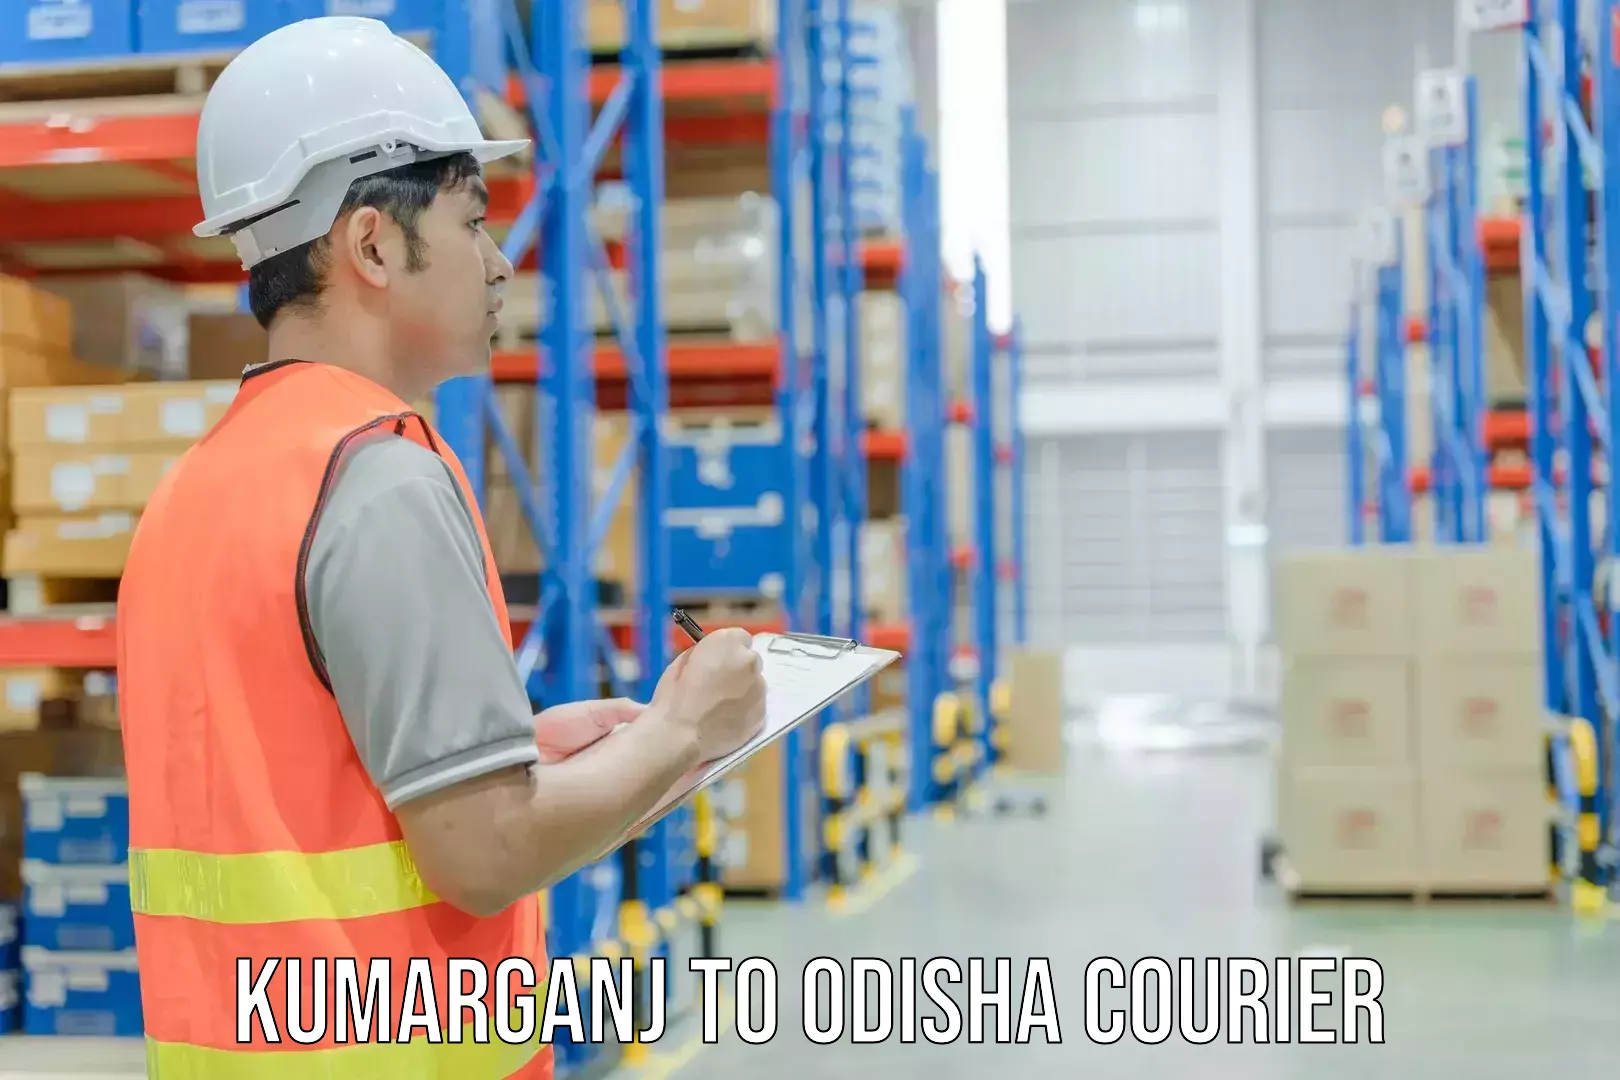 Courier service partnerships Kumarganj to Odisha